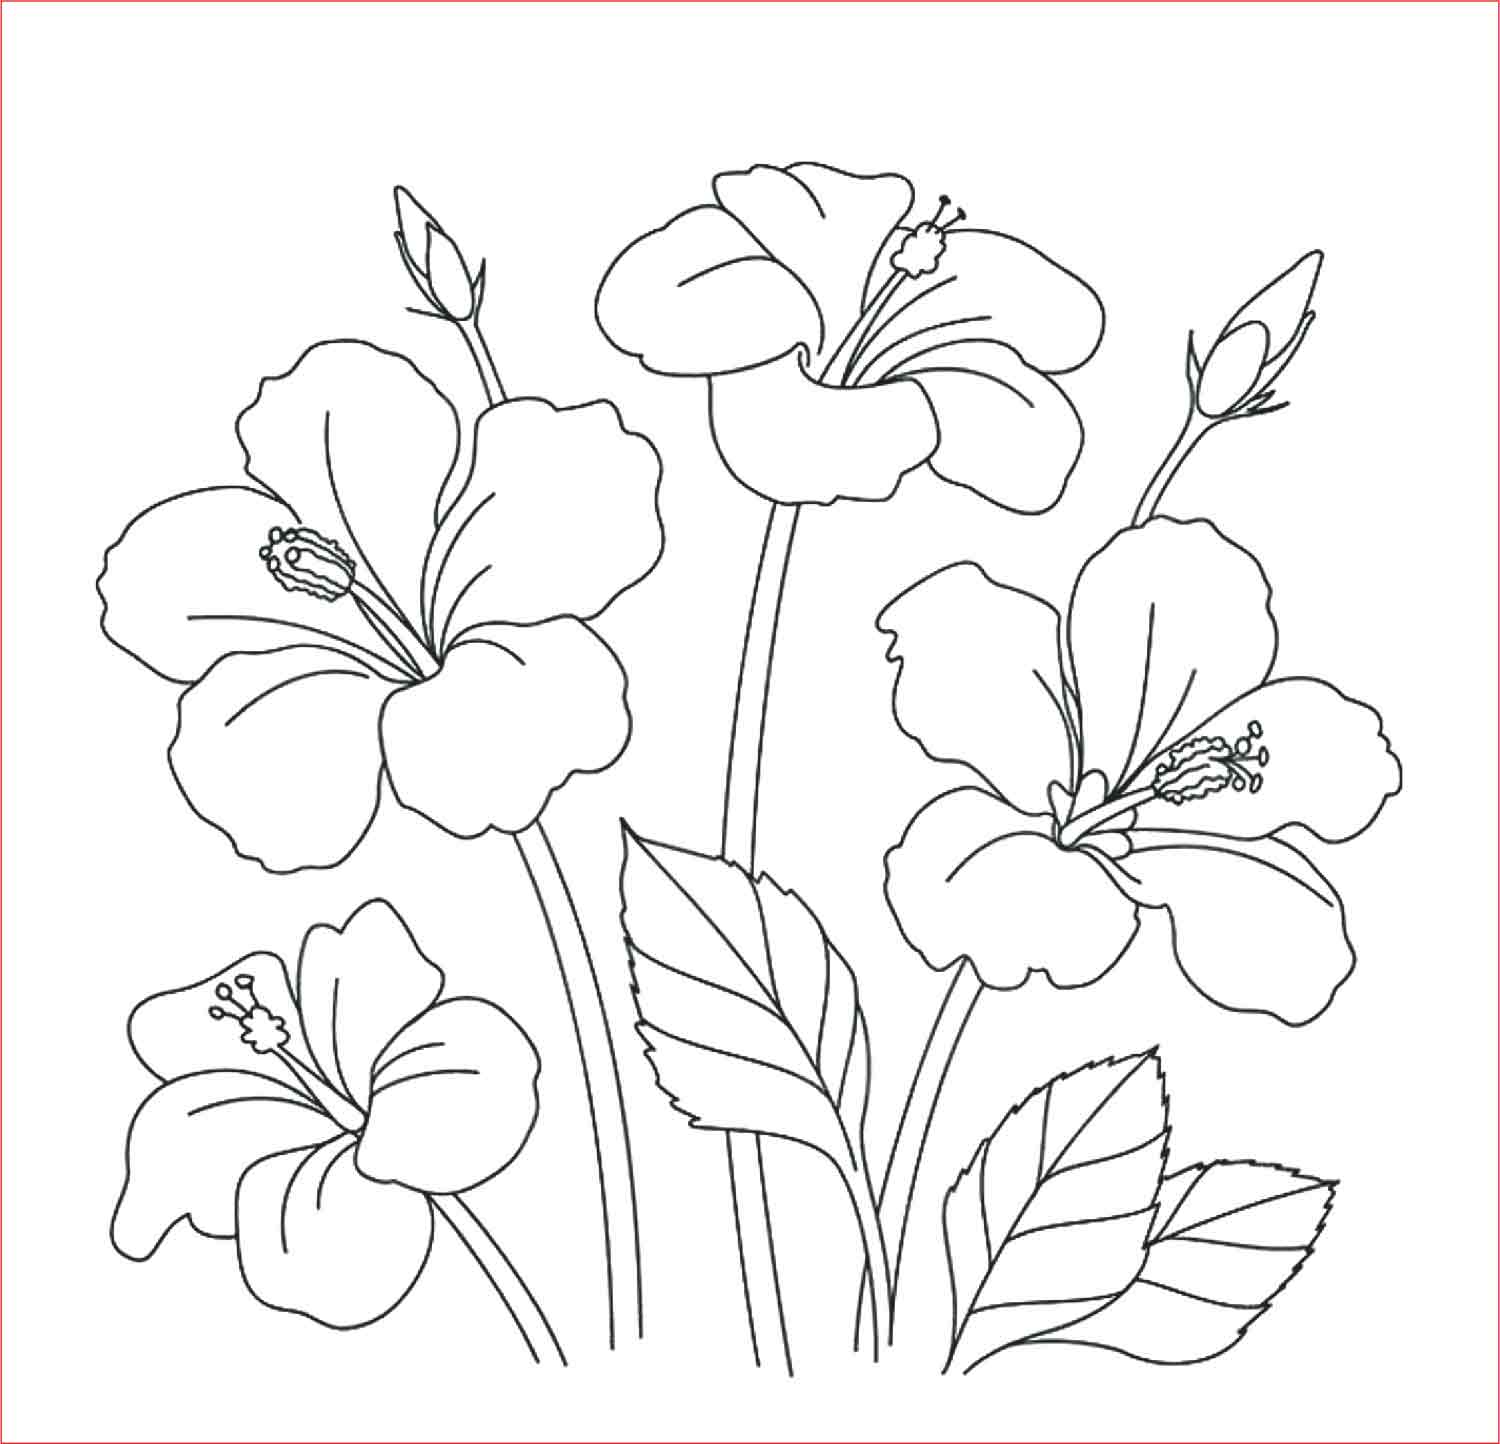 Gambar Bunga Yang Mudah Dan Indah - KibrisPDR